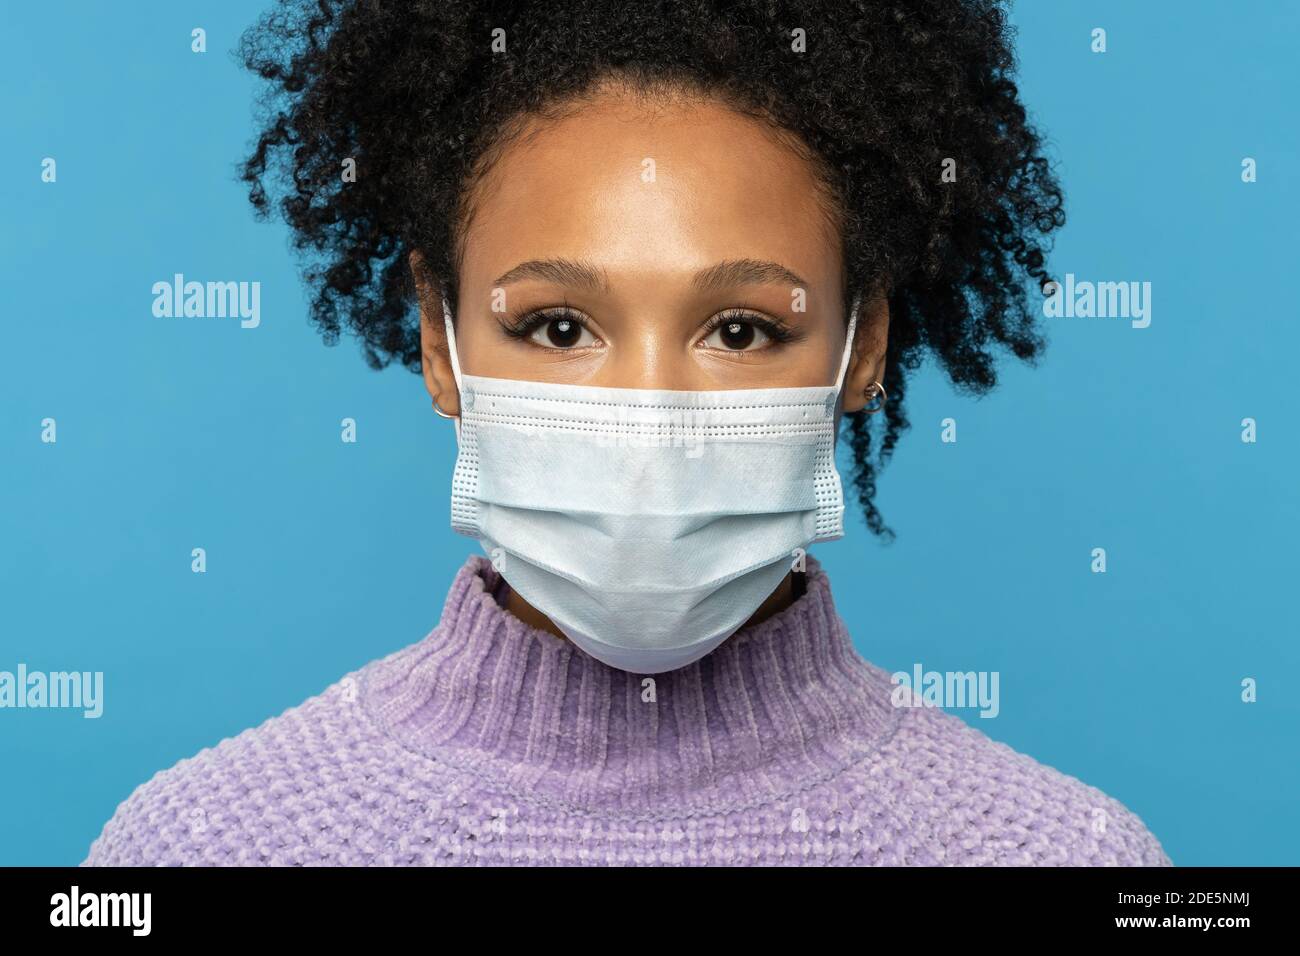 Primo piano ritratto studio di donna afroamericana indossare maschera medica viso durante covid-19, epidemia di coronavirus o stagione influenzale, isolato su sfondo blu Foto Stock